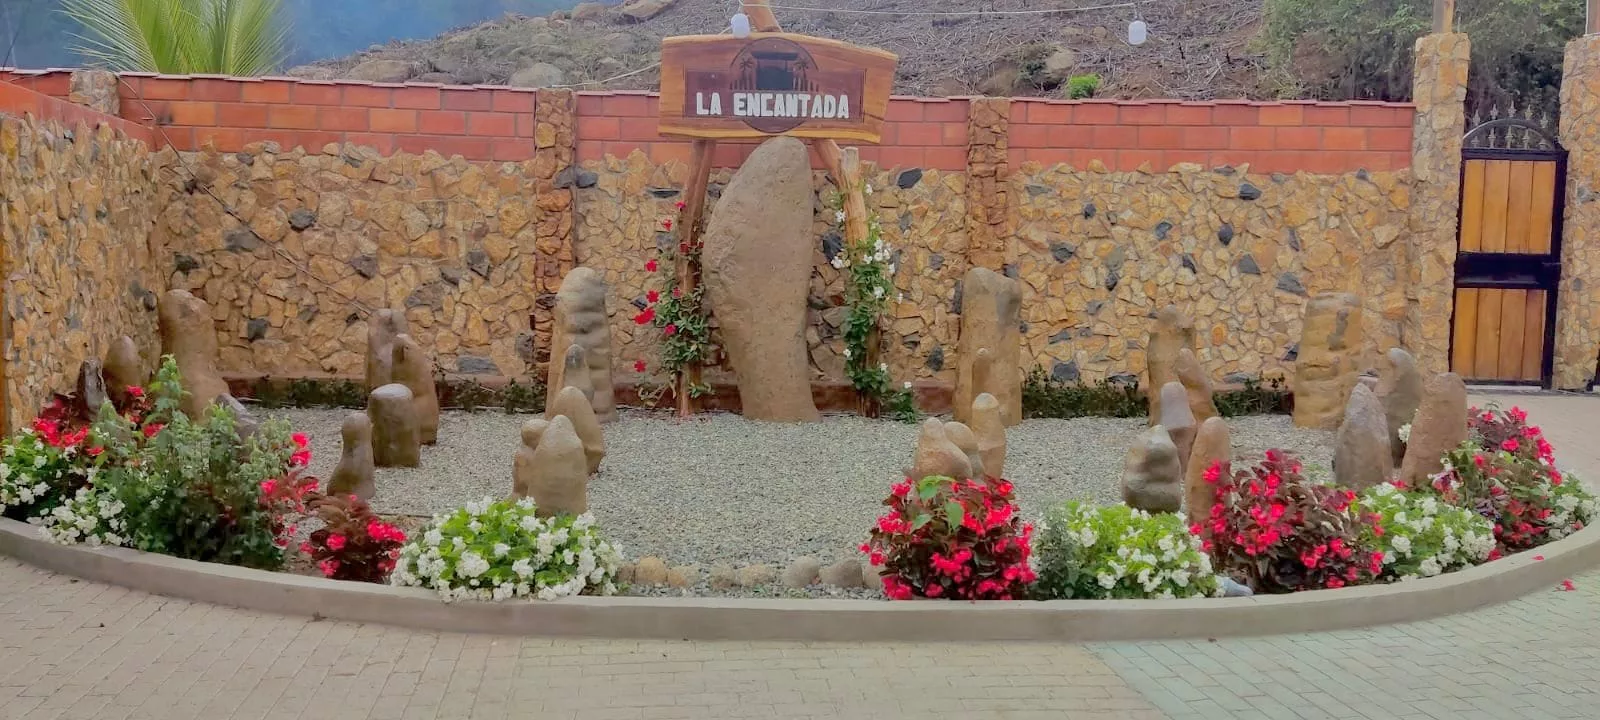 El proyecto turístico “La Encantada”, ubicado en el cantón Pindal de la provincia de Loja.